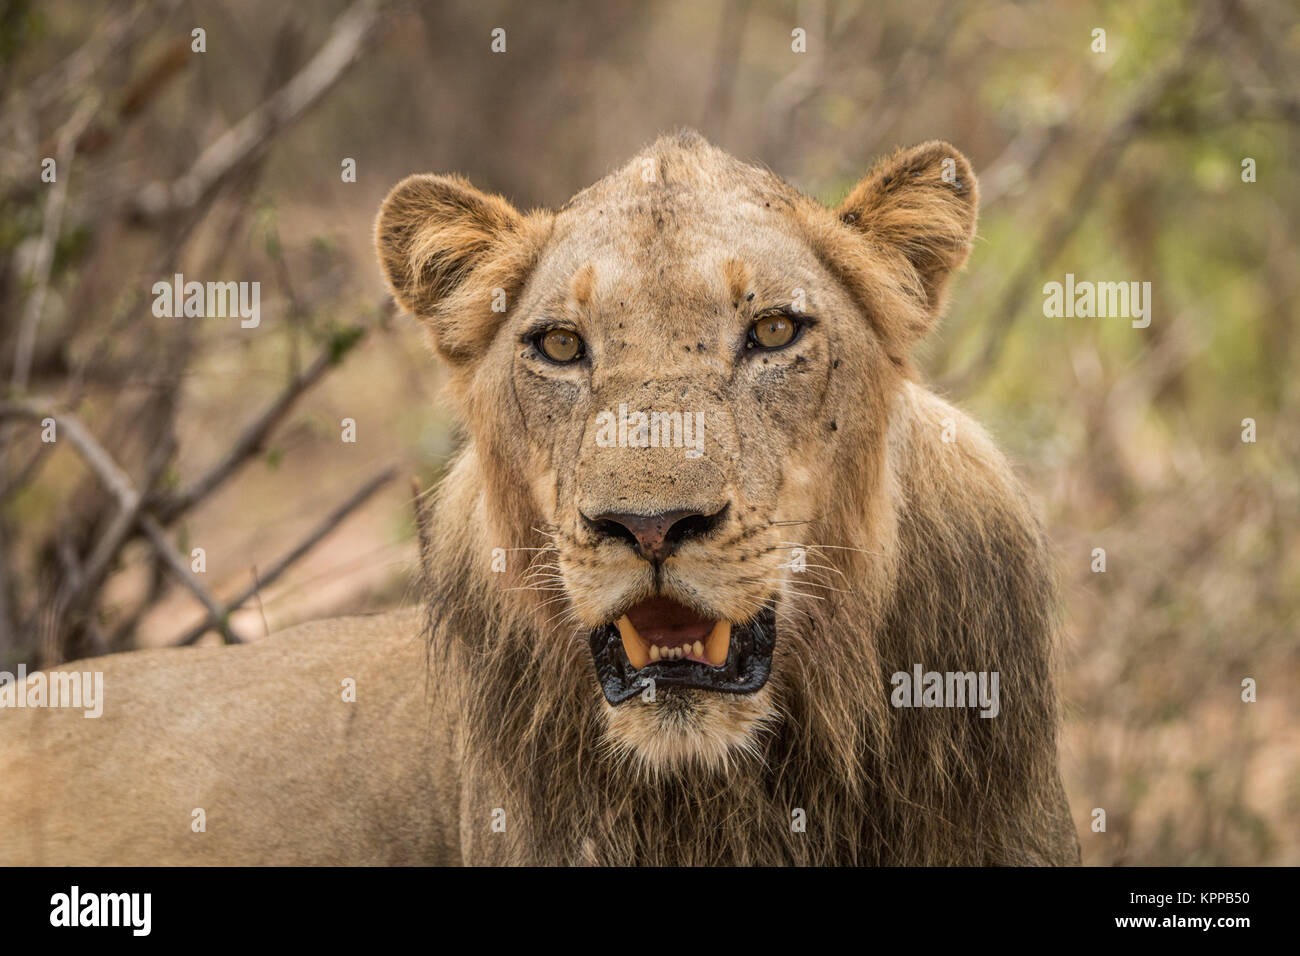 Protagonizada por León en el Parque Nacional Kruger. Foto de stock